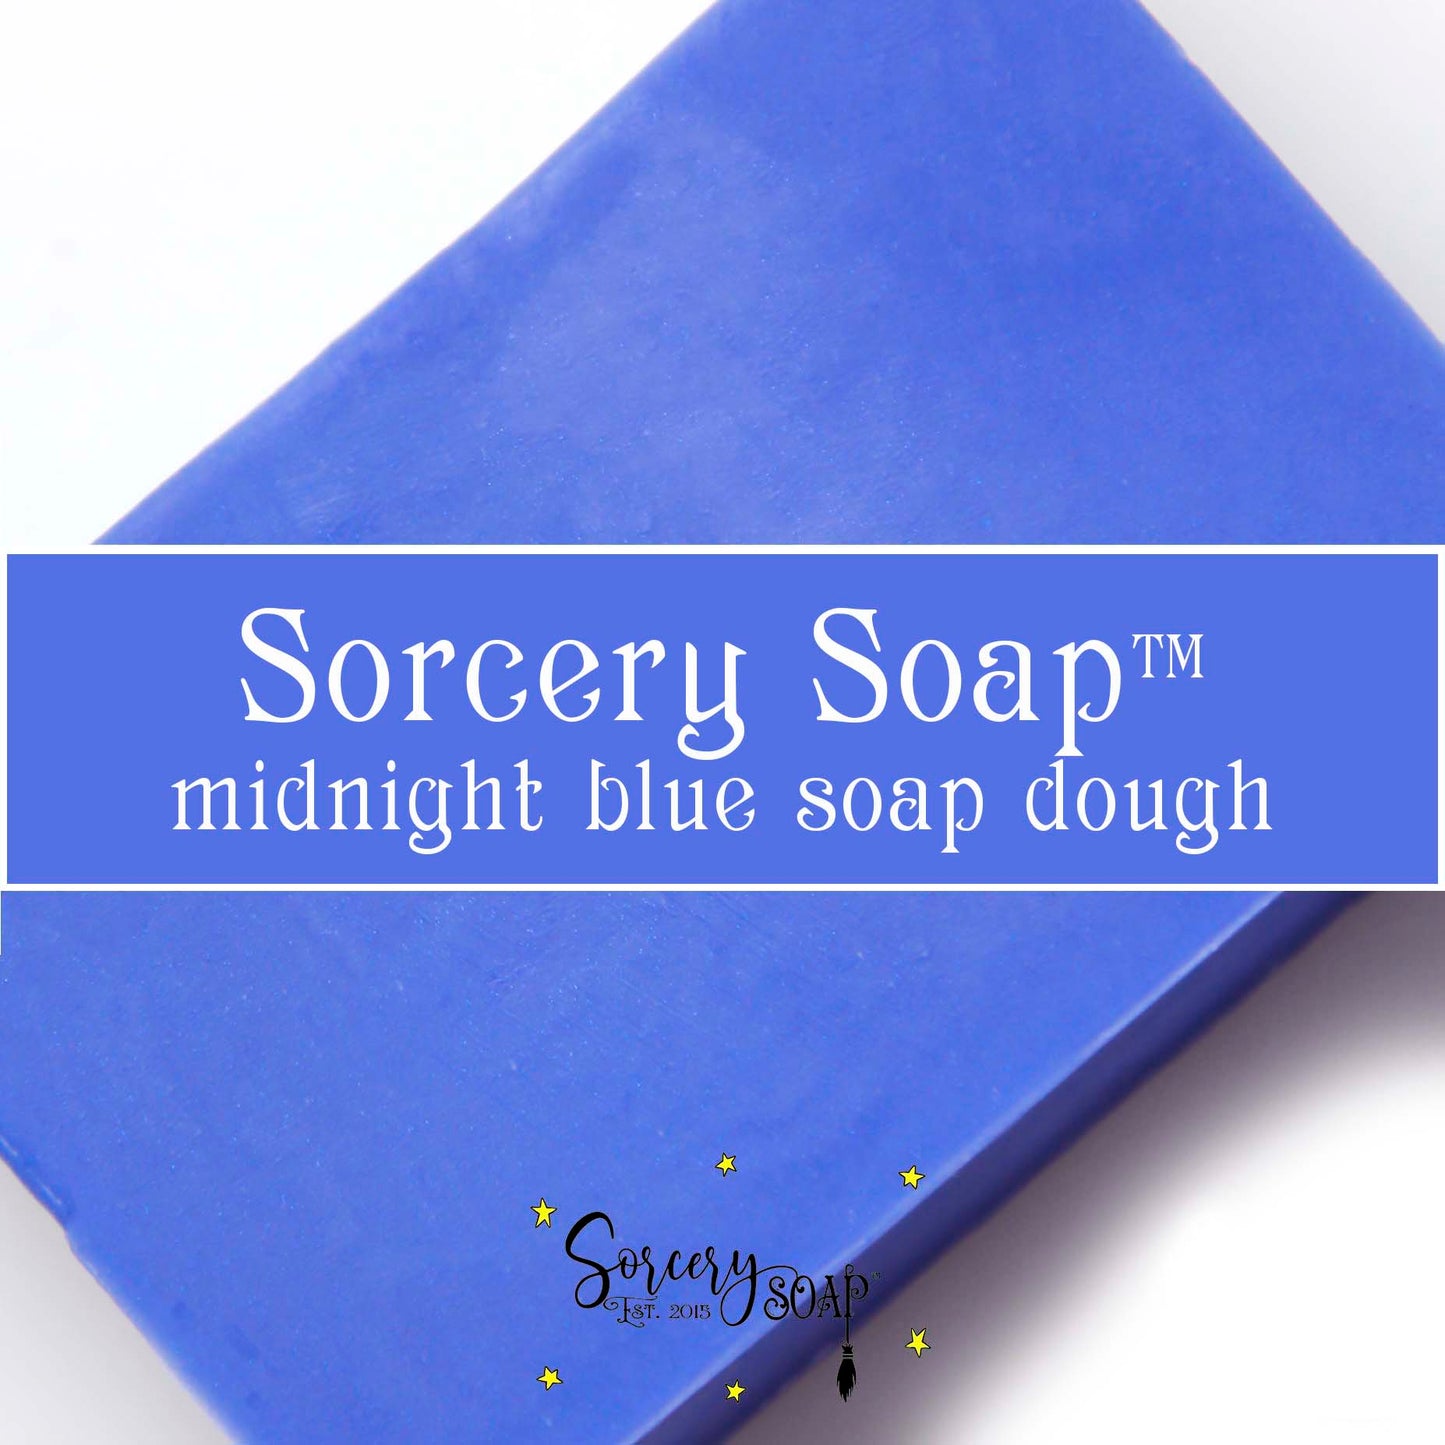 Blue Soap Dough